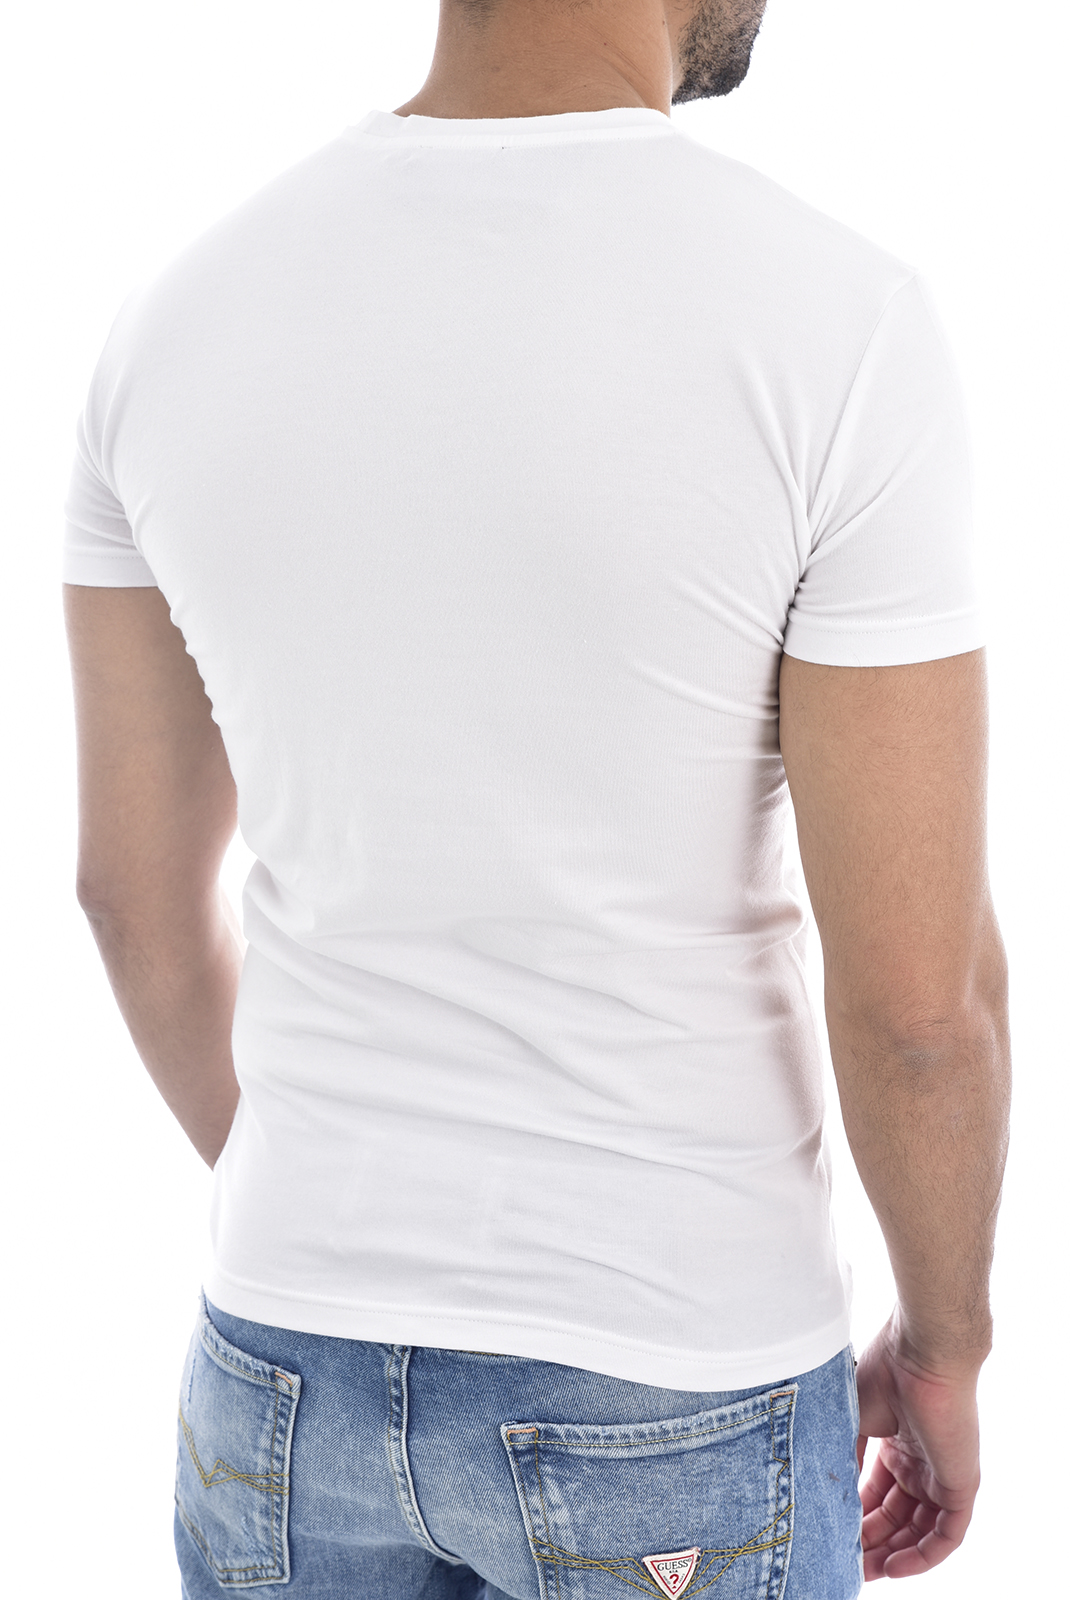 Emporio Armani Tee-shirt Blanc À Manches Courtes 111035 9a516